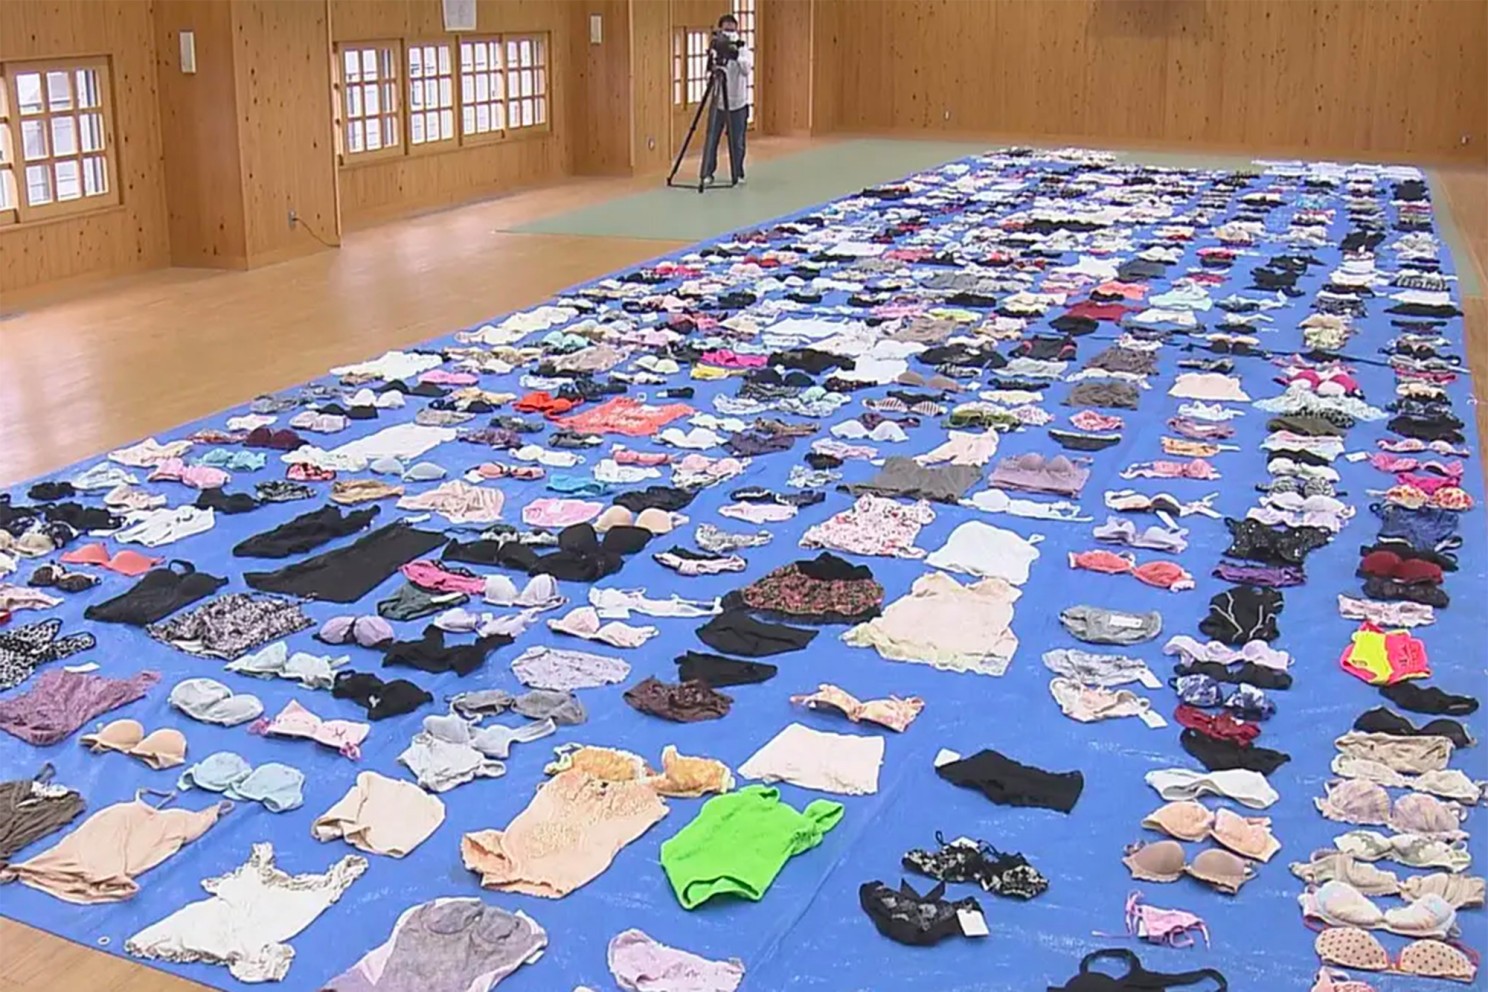 Japonês é preso por roubar mais de 700 peças íntimas femininas em lavanderias (Foto: reprodução/ NY Post/ Beppu City Police Office)